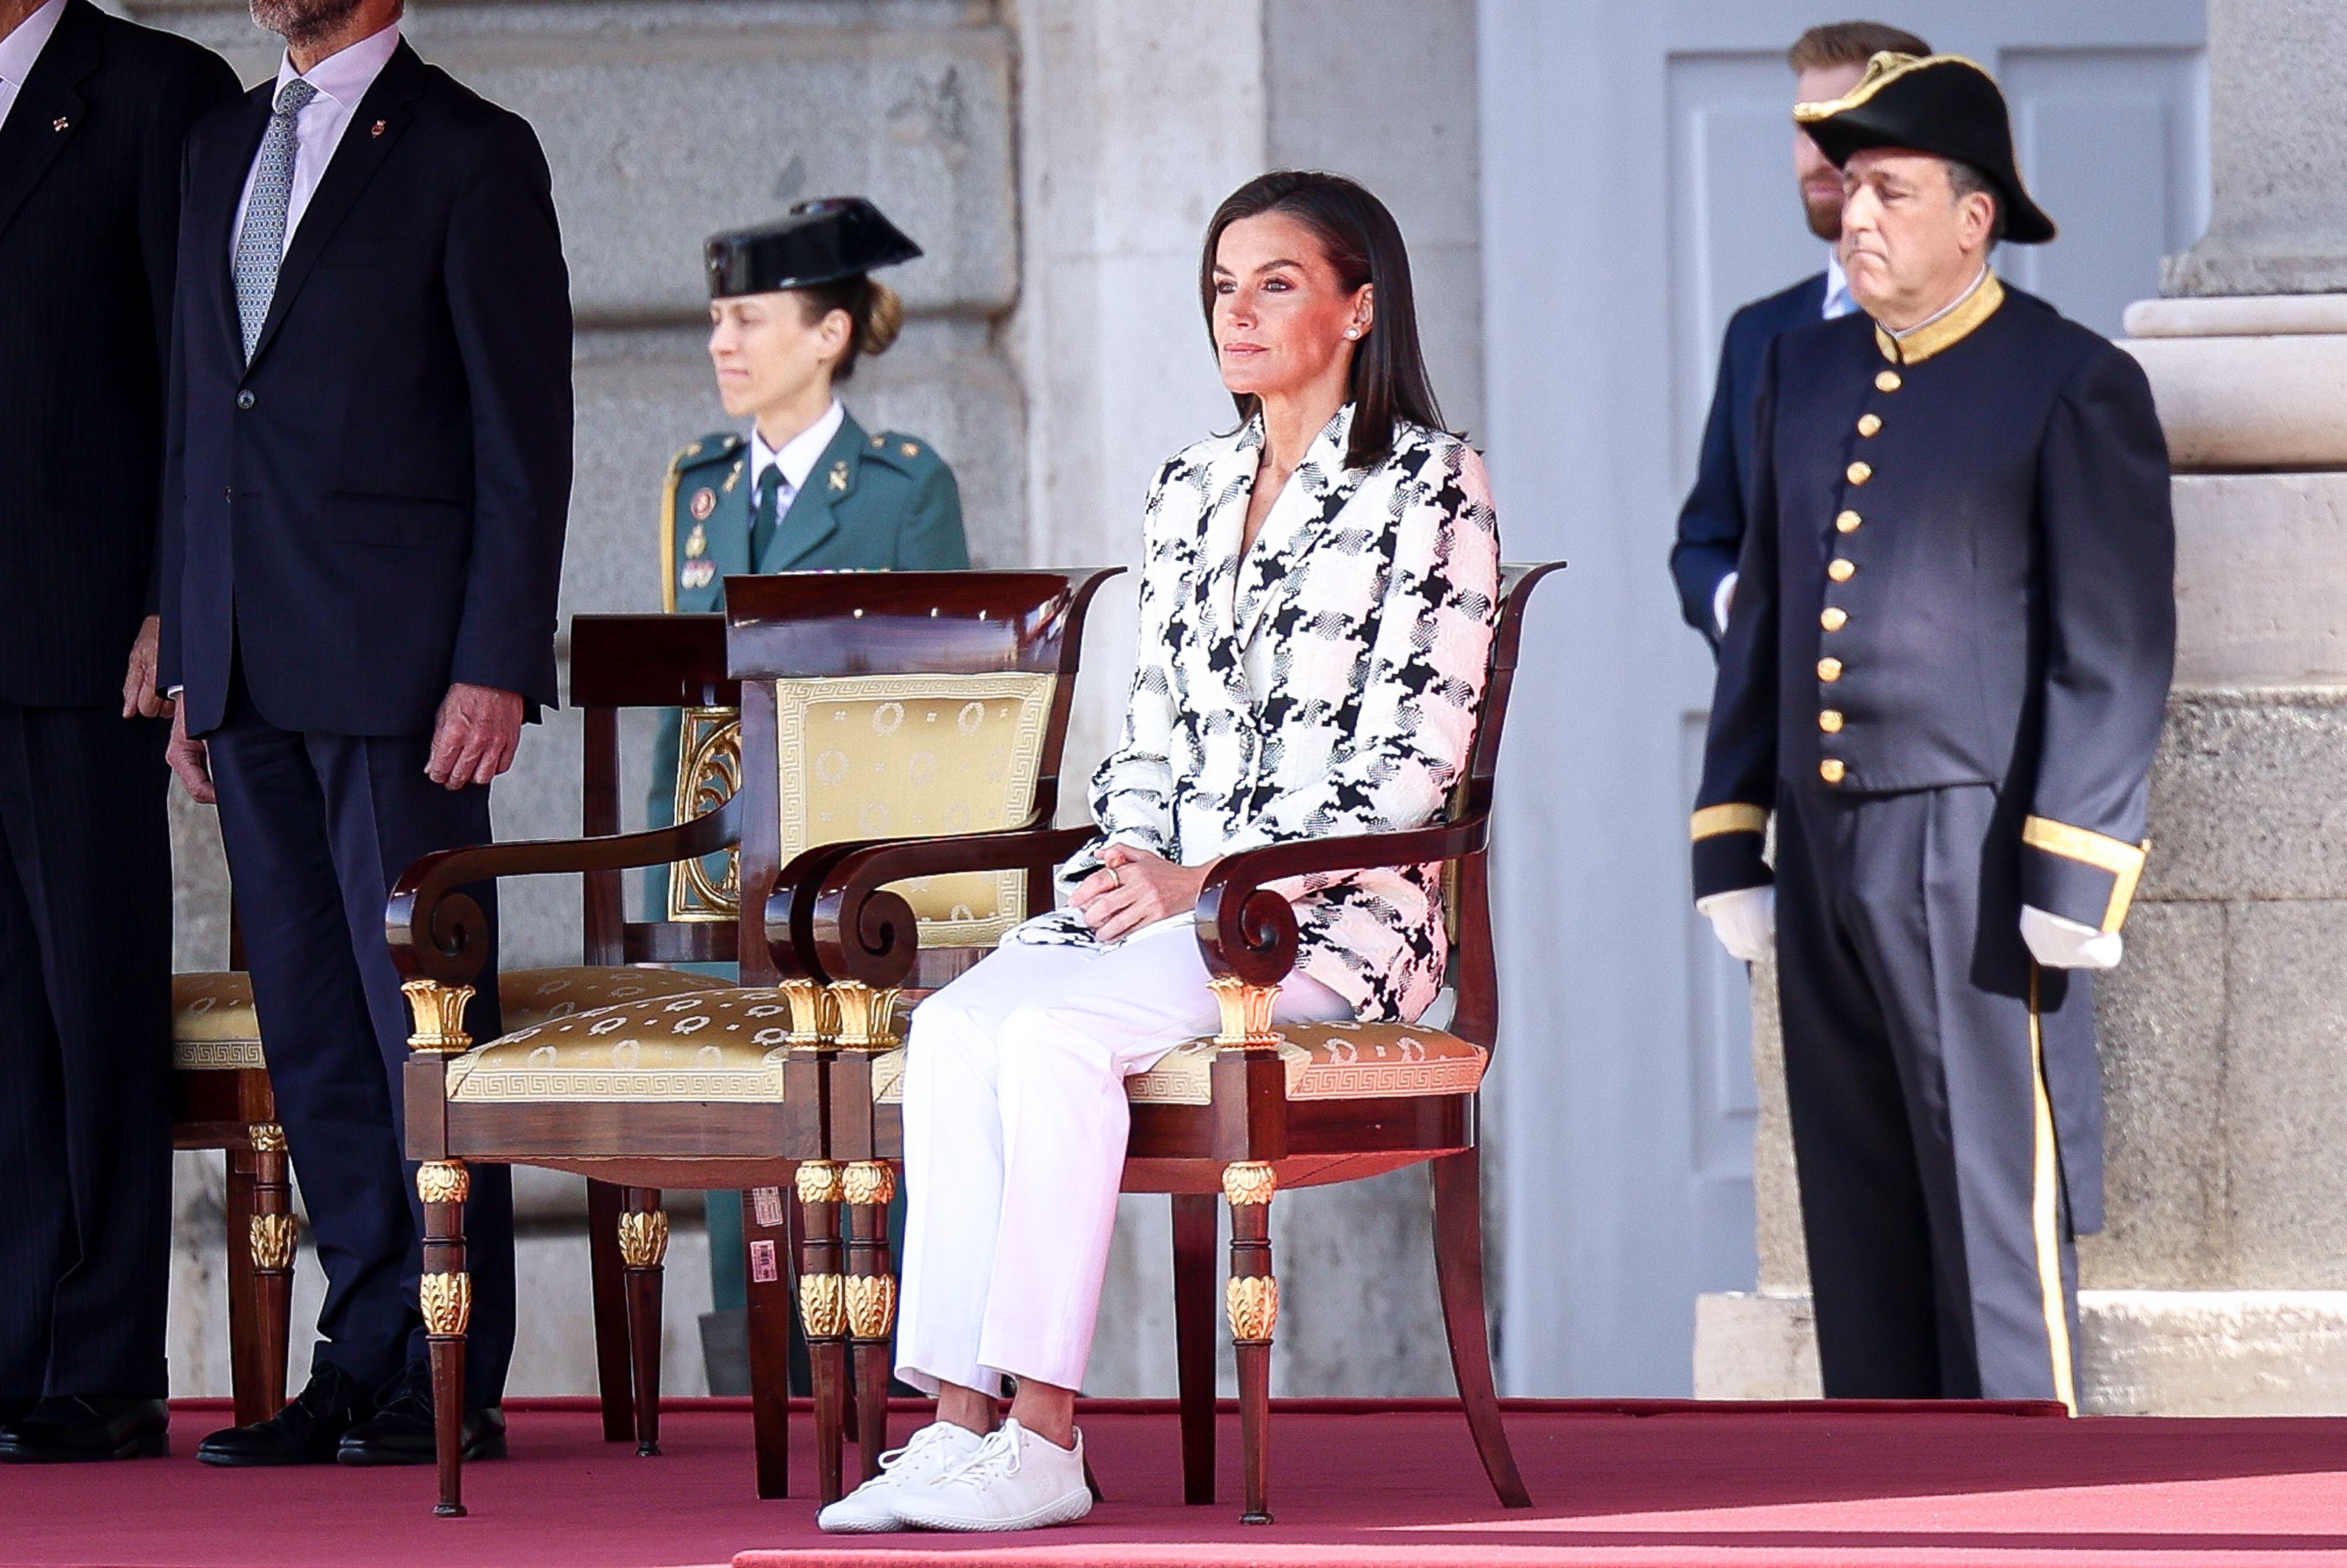 La reina Letizia critica la creciente popularidad del calzado descalzo y minimalista, explicando qué es y por qué ha provocado controversia.